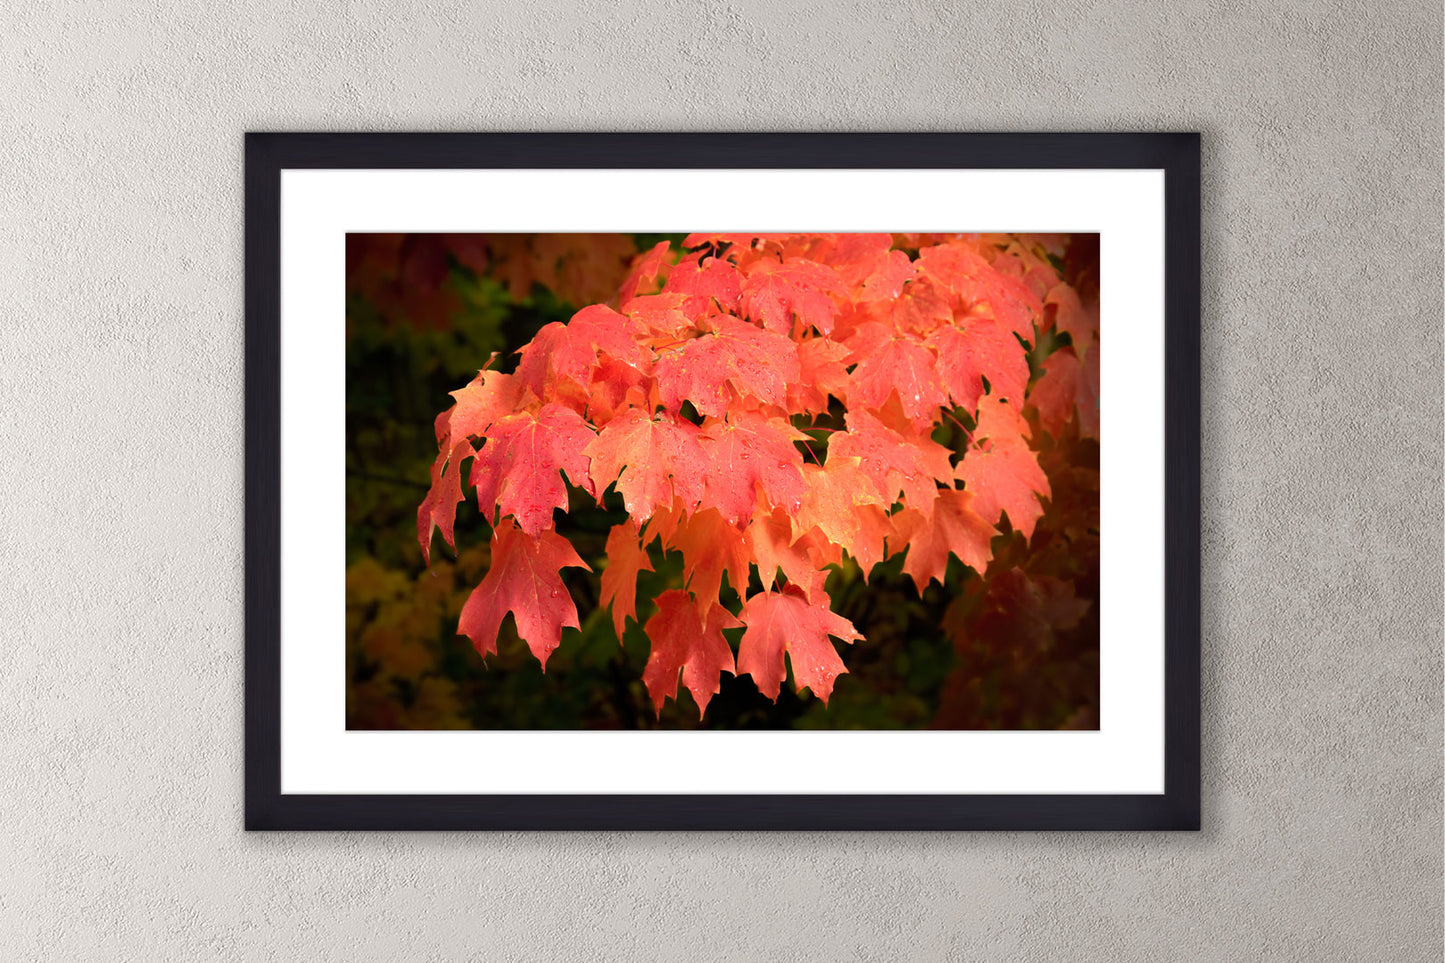 Autumn's Fiery Maple